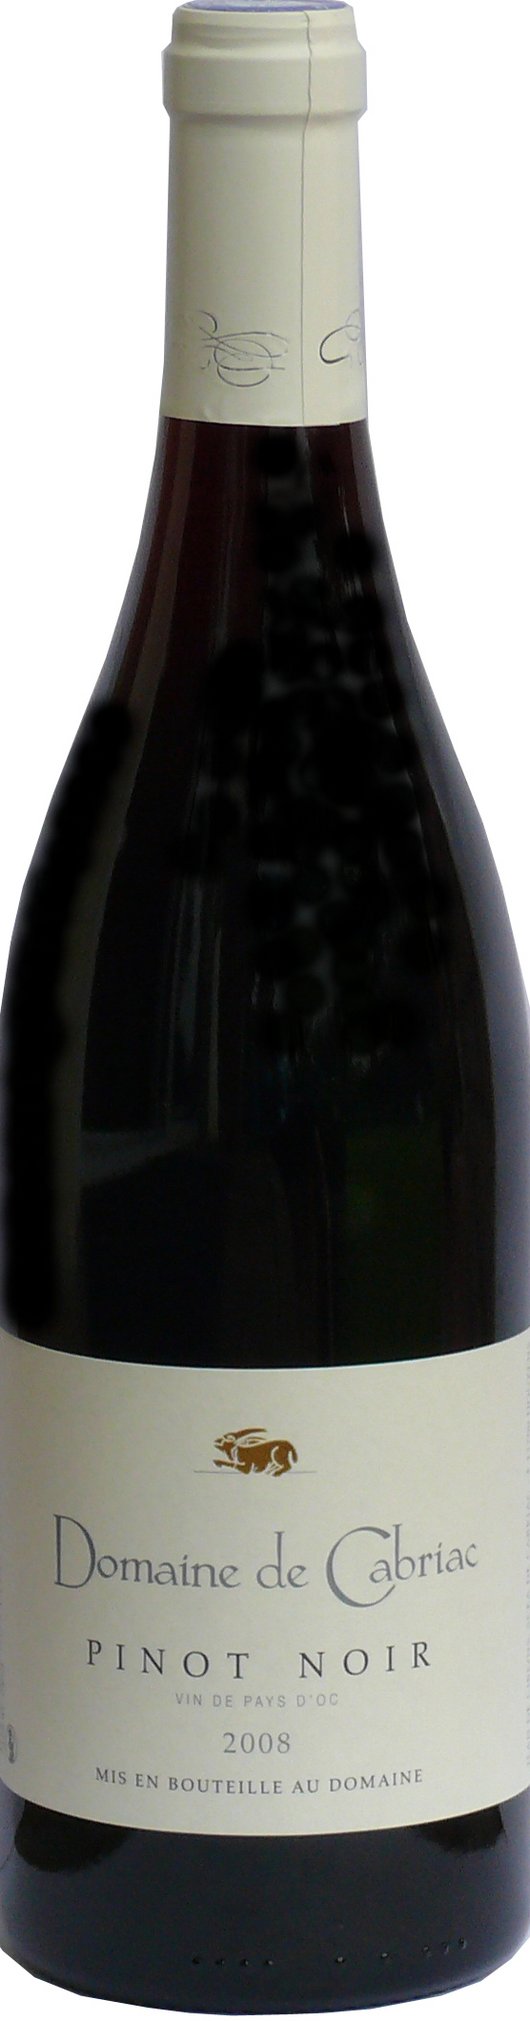 Domaine de Cabriac | Pinot Noir